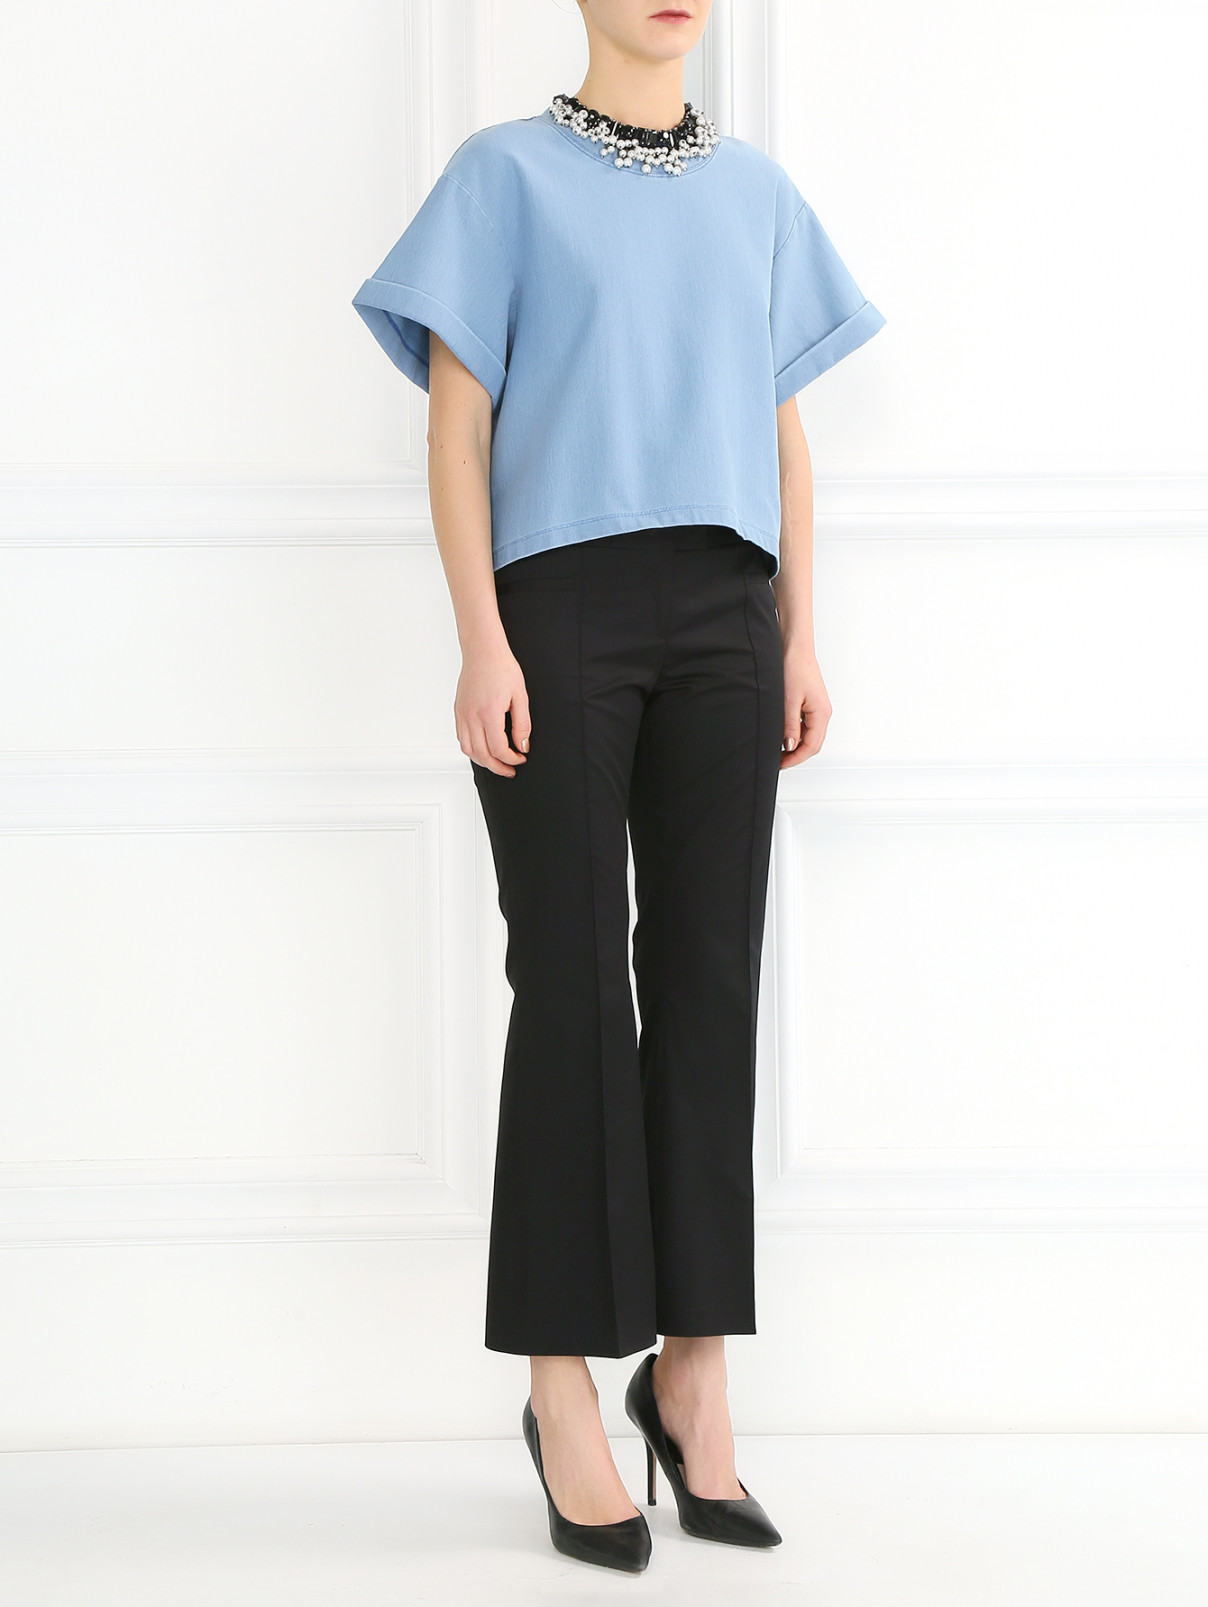 Укороченные брюки из хлопка с боковыми карманами Barbara Bui  –  Модель Общий вид  – Цвет:  Черный